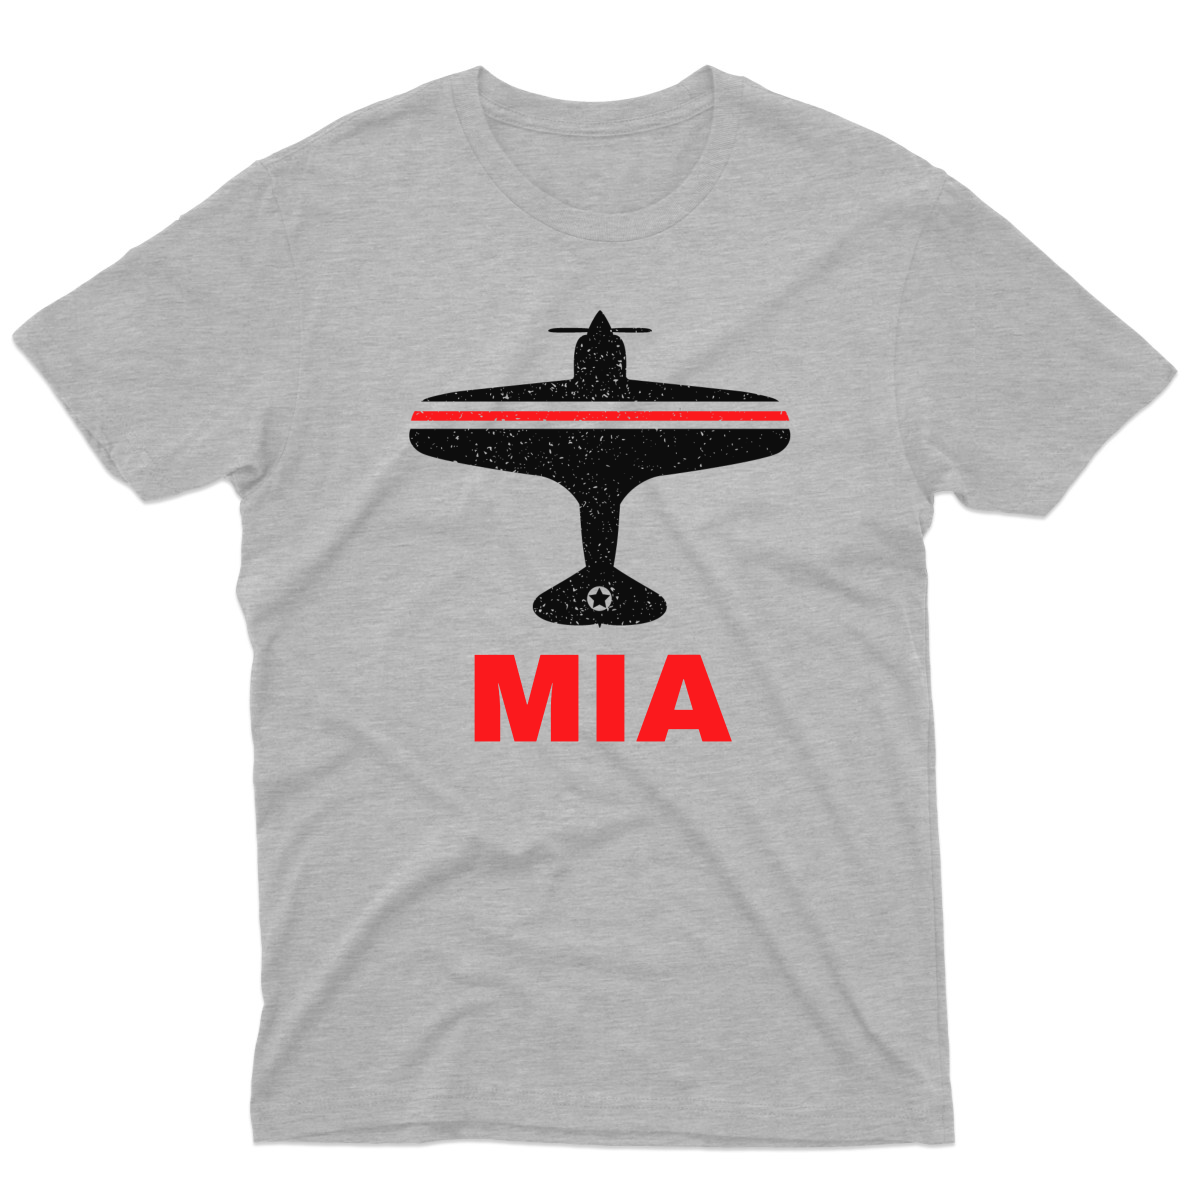 Fly Miami MIA Airport Men's T-shirt | Gray